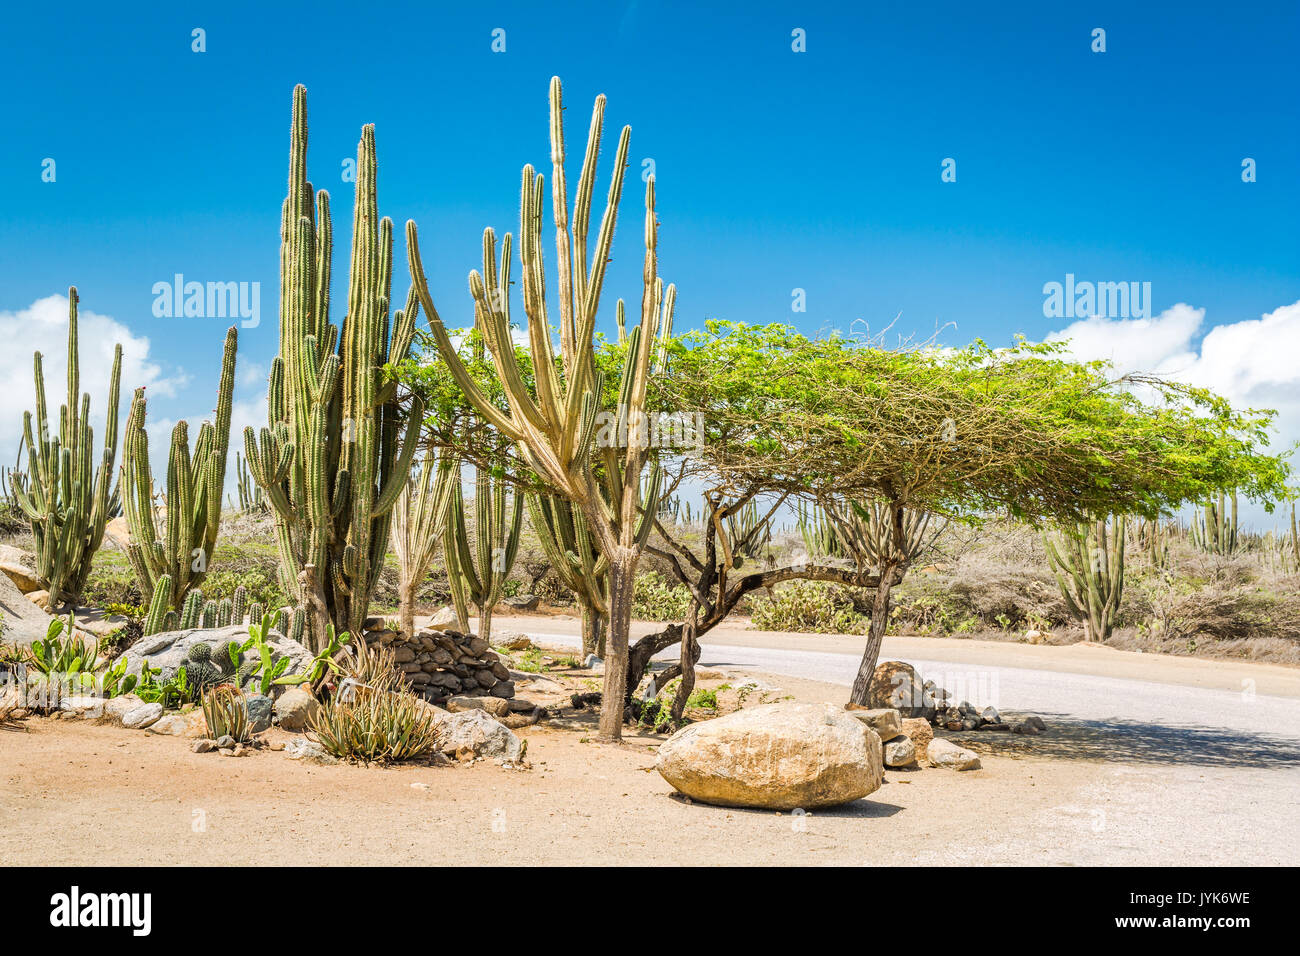 Climat sec typique de cactus et d'arbustes à Aruba. Les zones rurales de l'île, appelée kunuku, abritent diverses formes de cactus, des arbustes épineux, et lo Banque D'Images